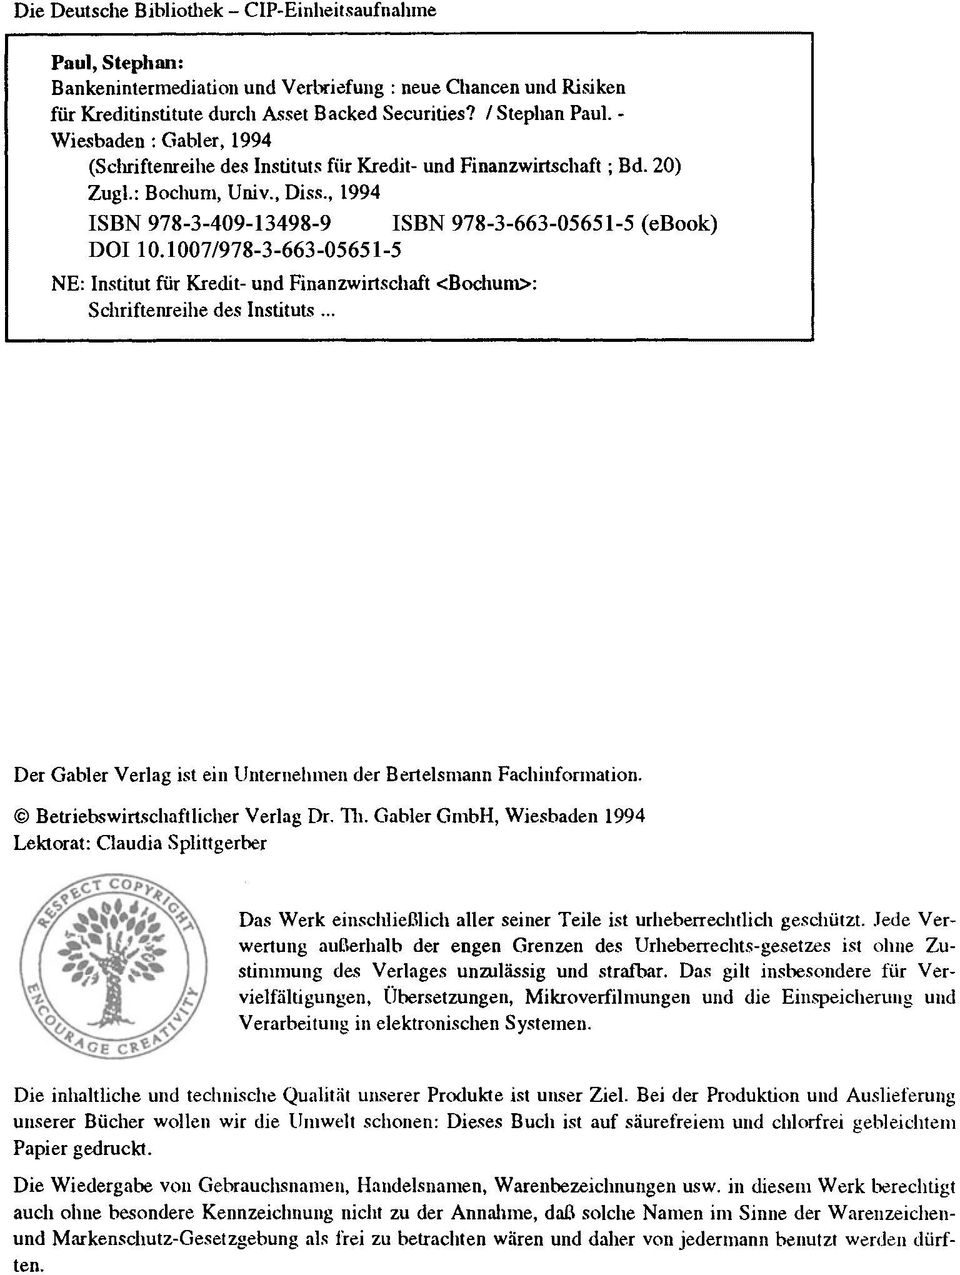 1007/978-3-663-05651-5 NE: Institut für Kredit- und Finanzwirtschaft <Bochum>: Schriftenreihe des Institut~... Der Gabler Verlag ist ein Unternehmen der Bertelsmann Fachinformation.